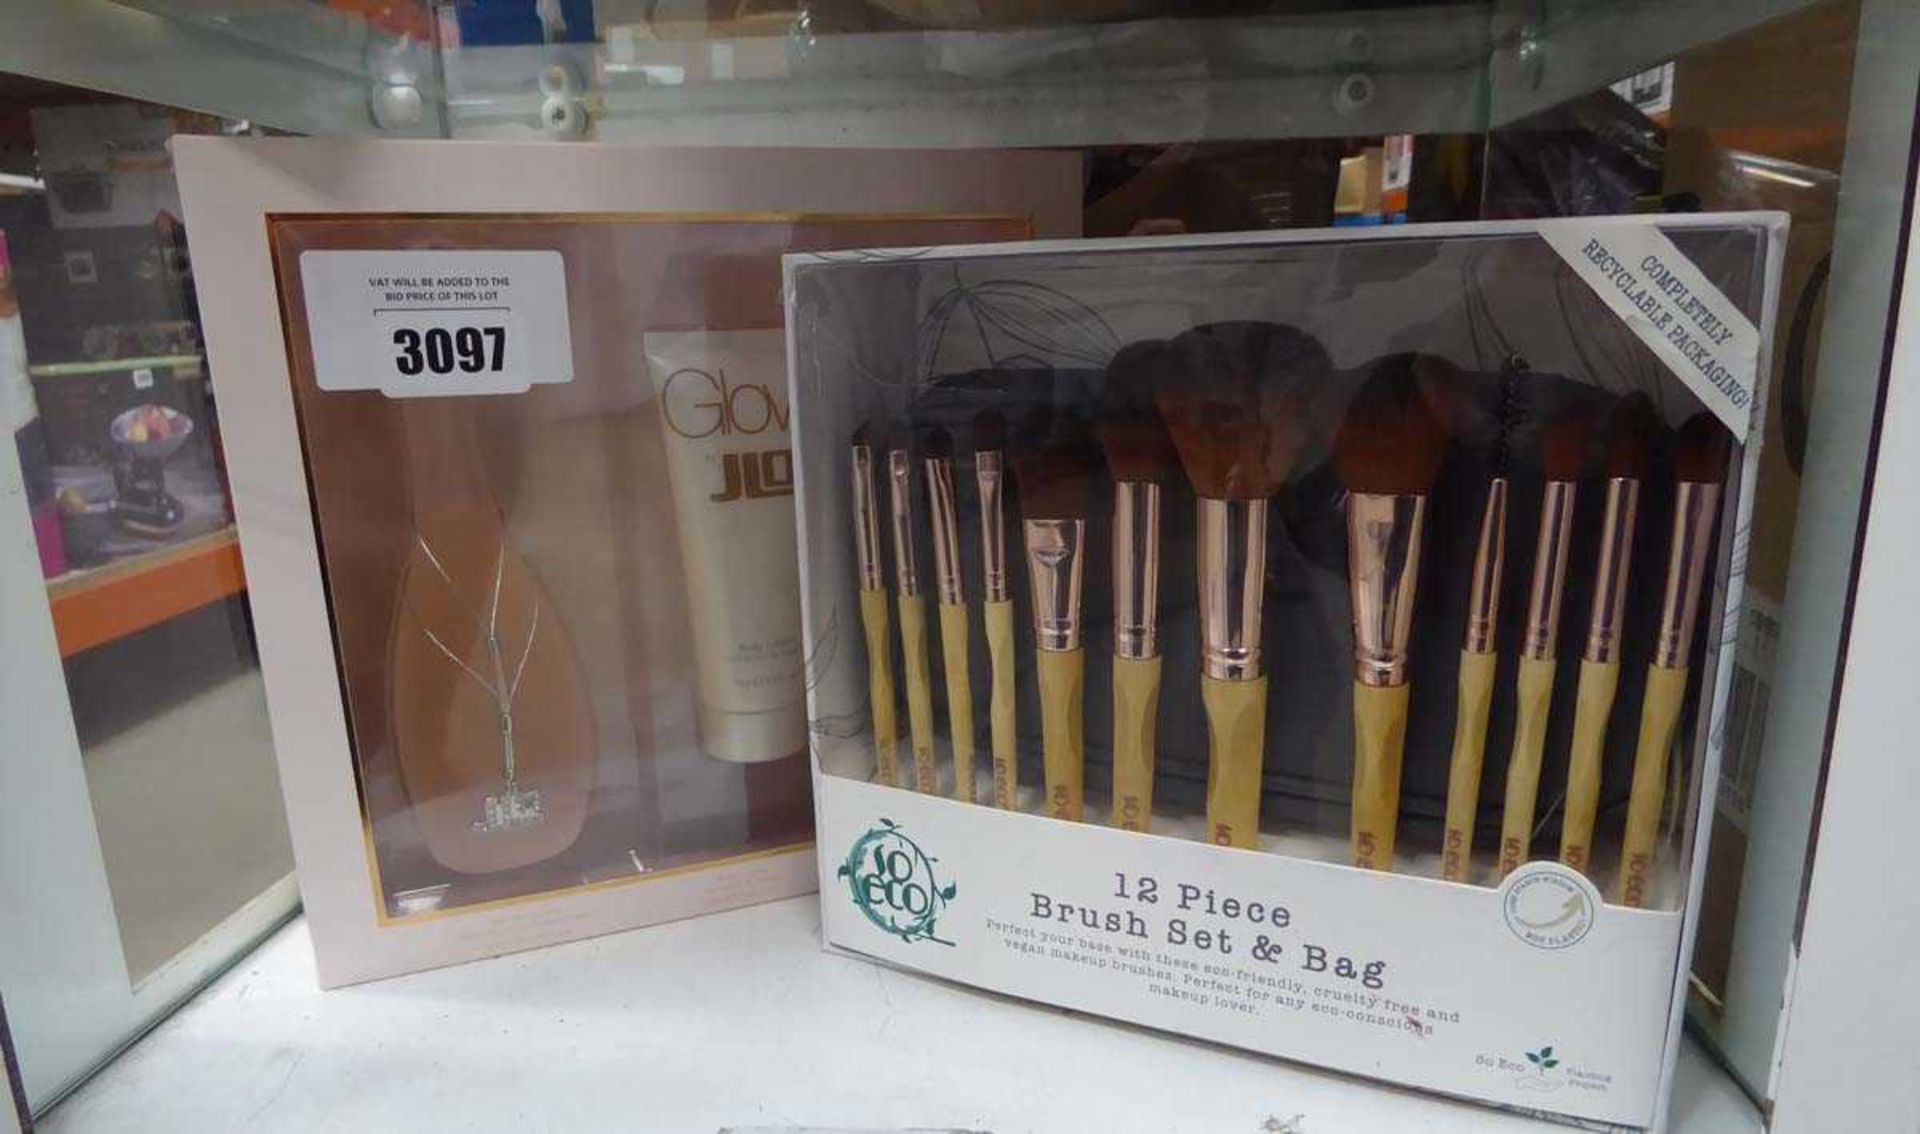 +VAT J-Lo Glow fragrance gift set plus 12 piece brush set in bag